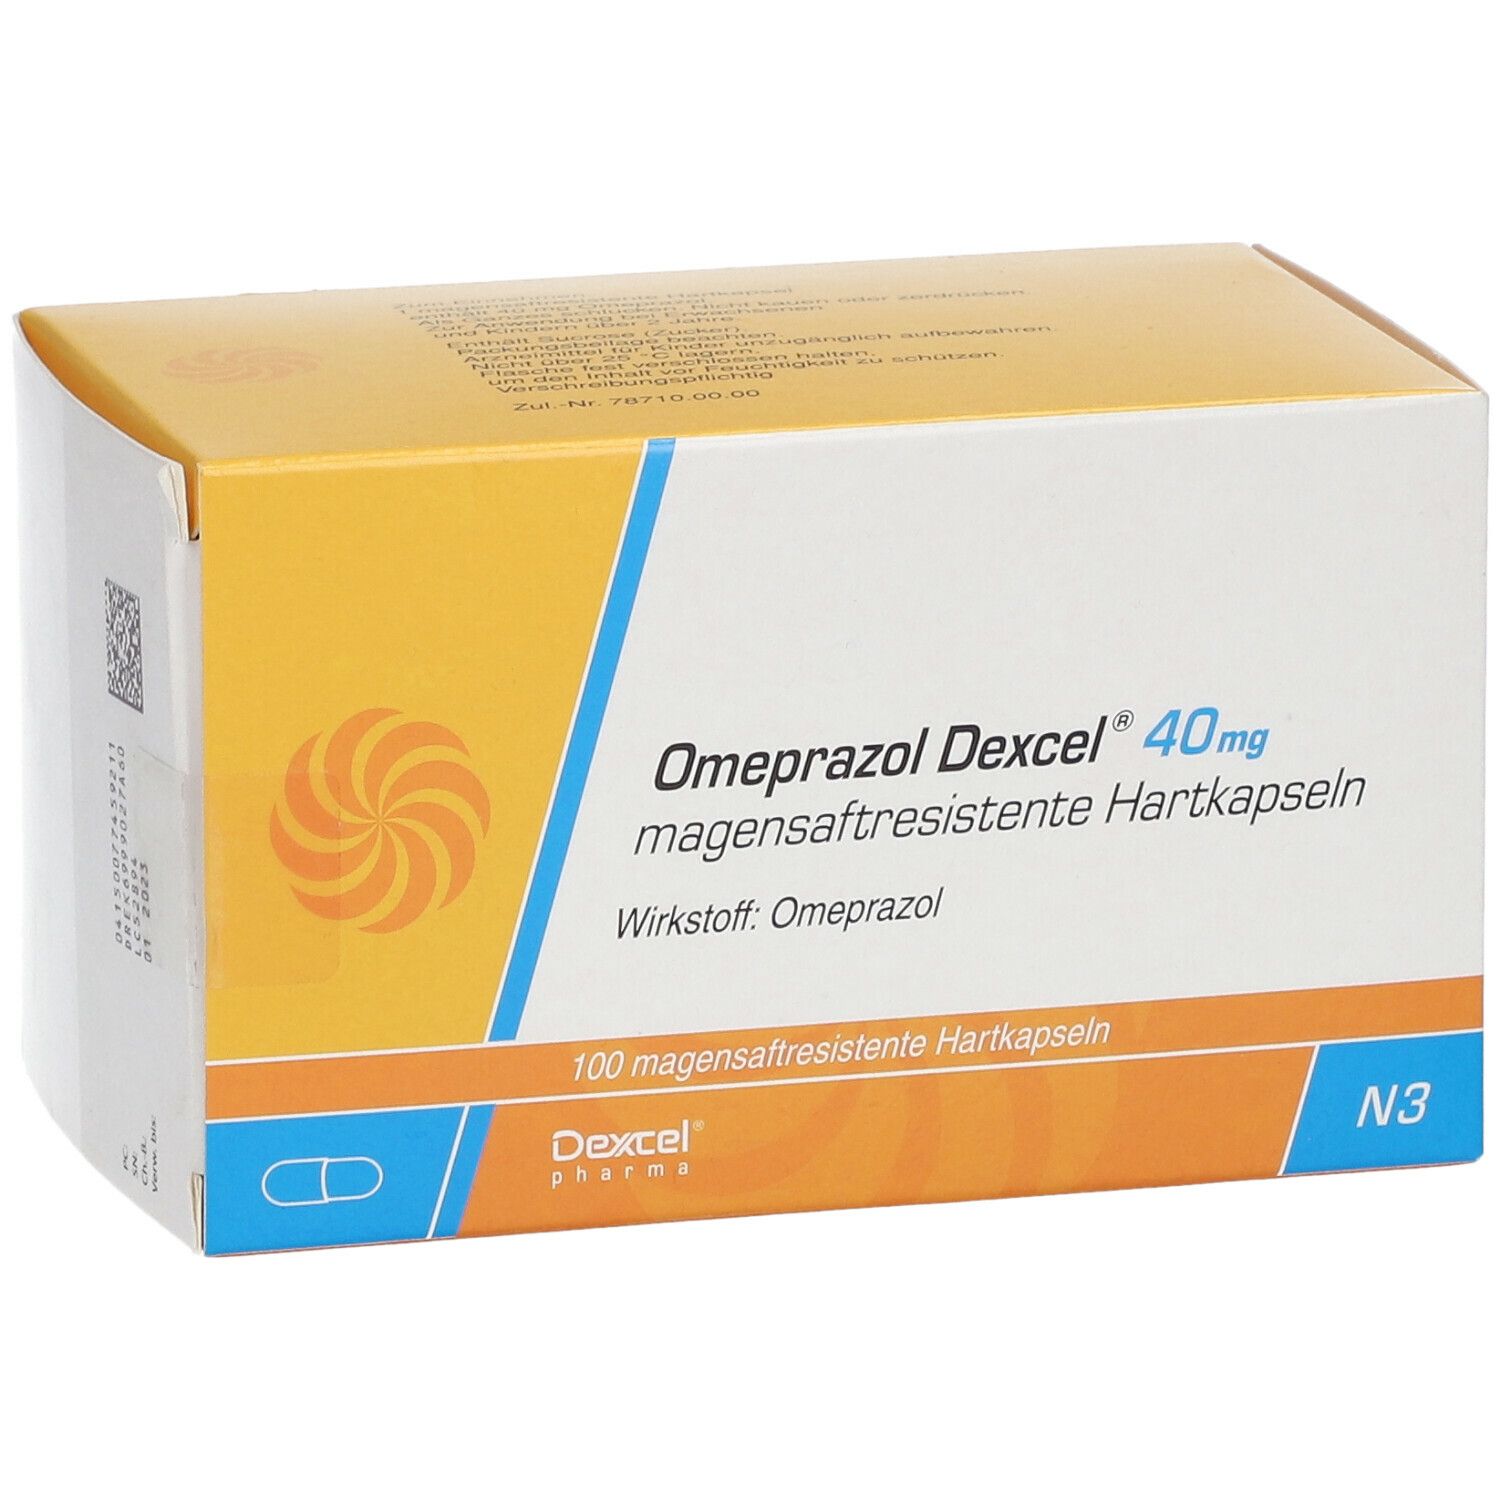 Omeprazol Dexcel® 40 mg